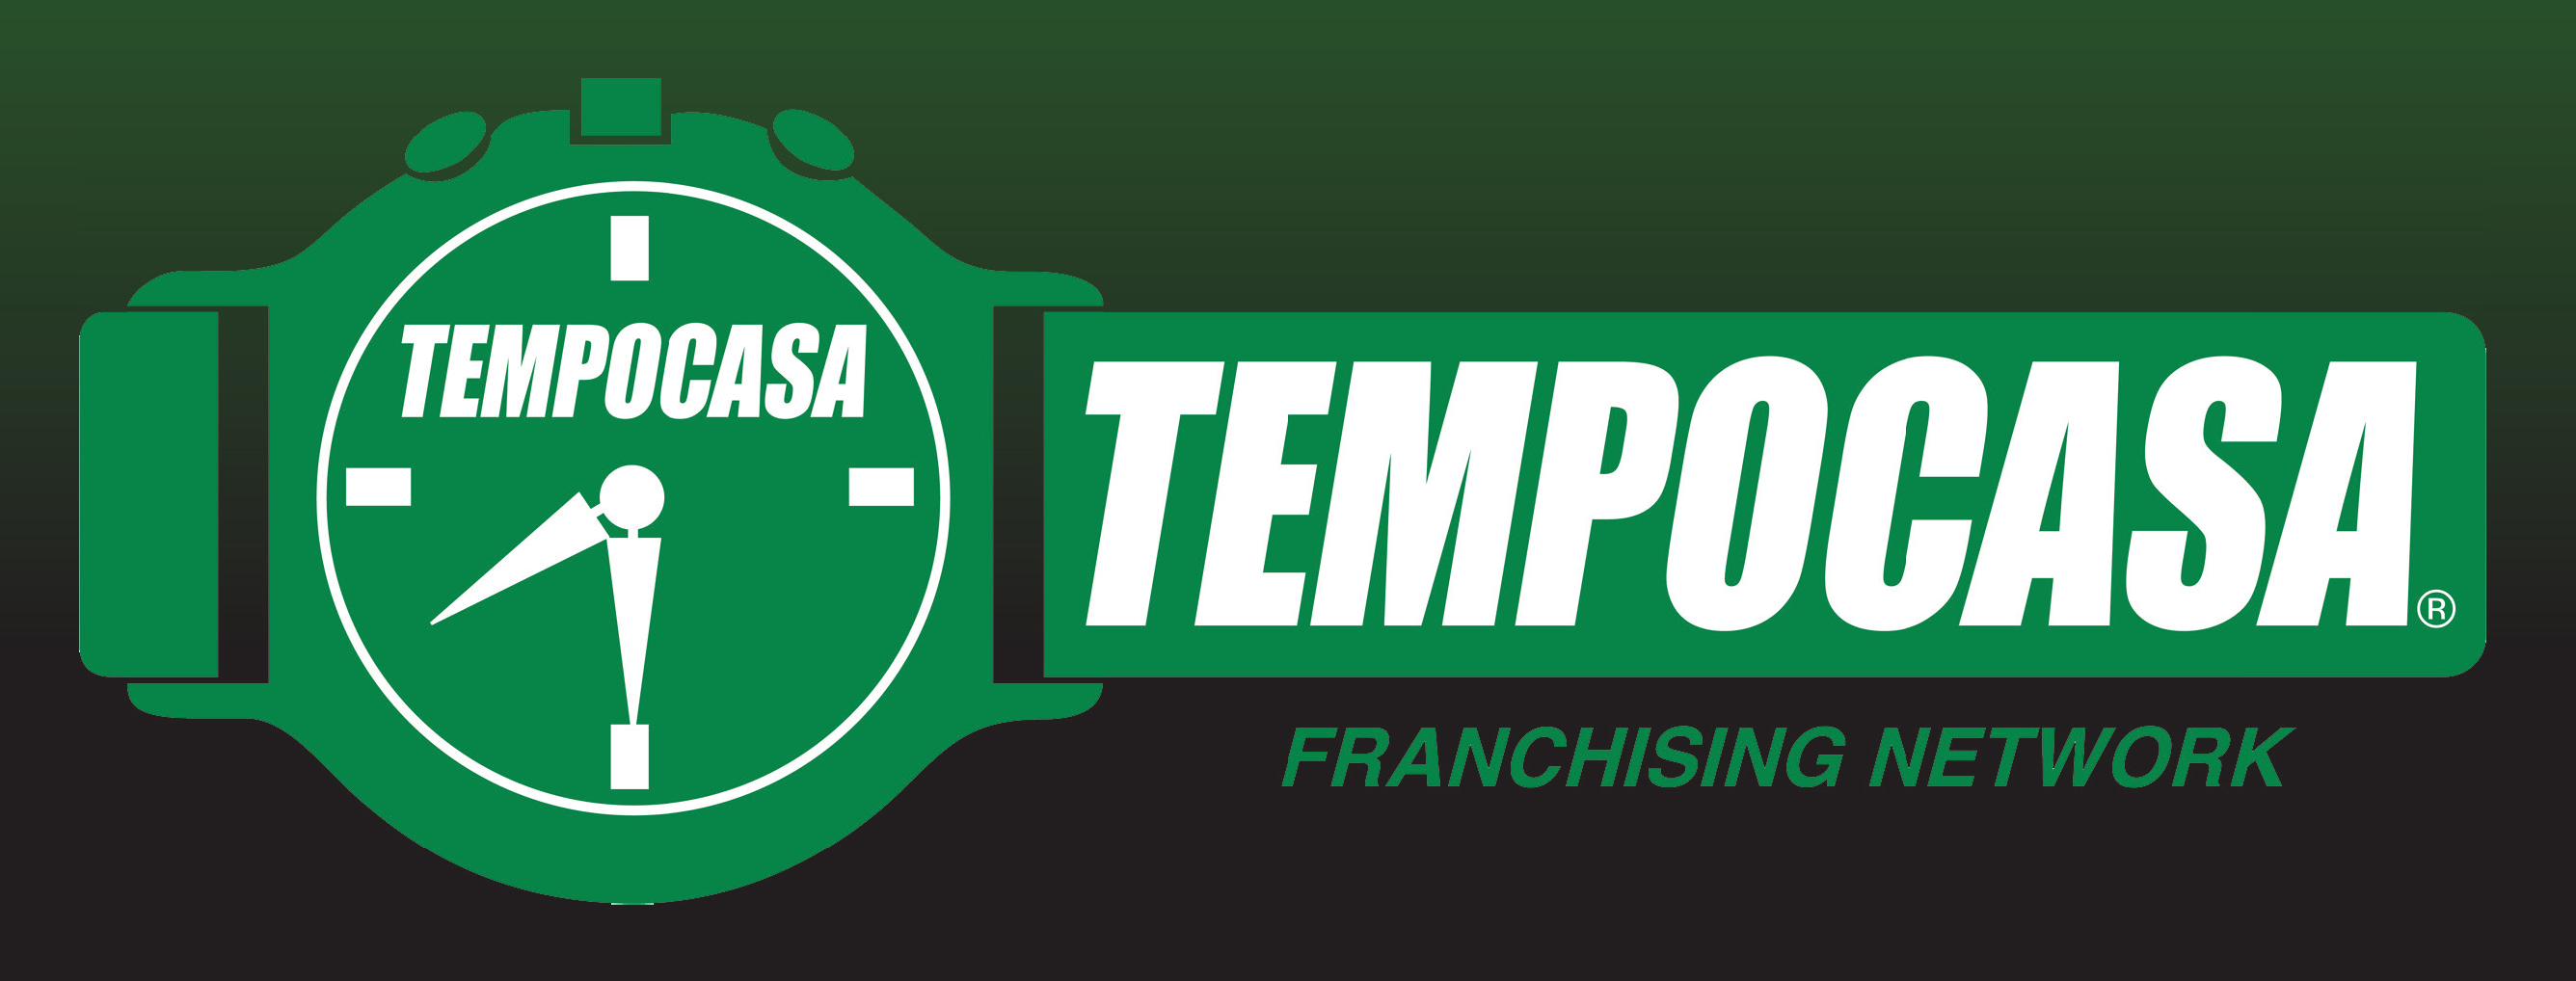 Banner Tempocasa